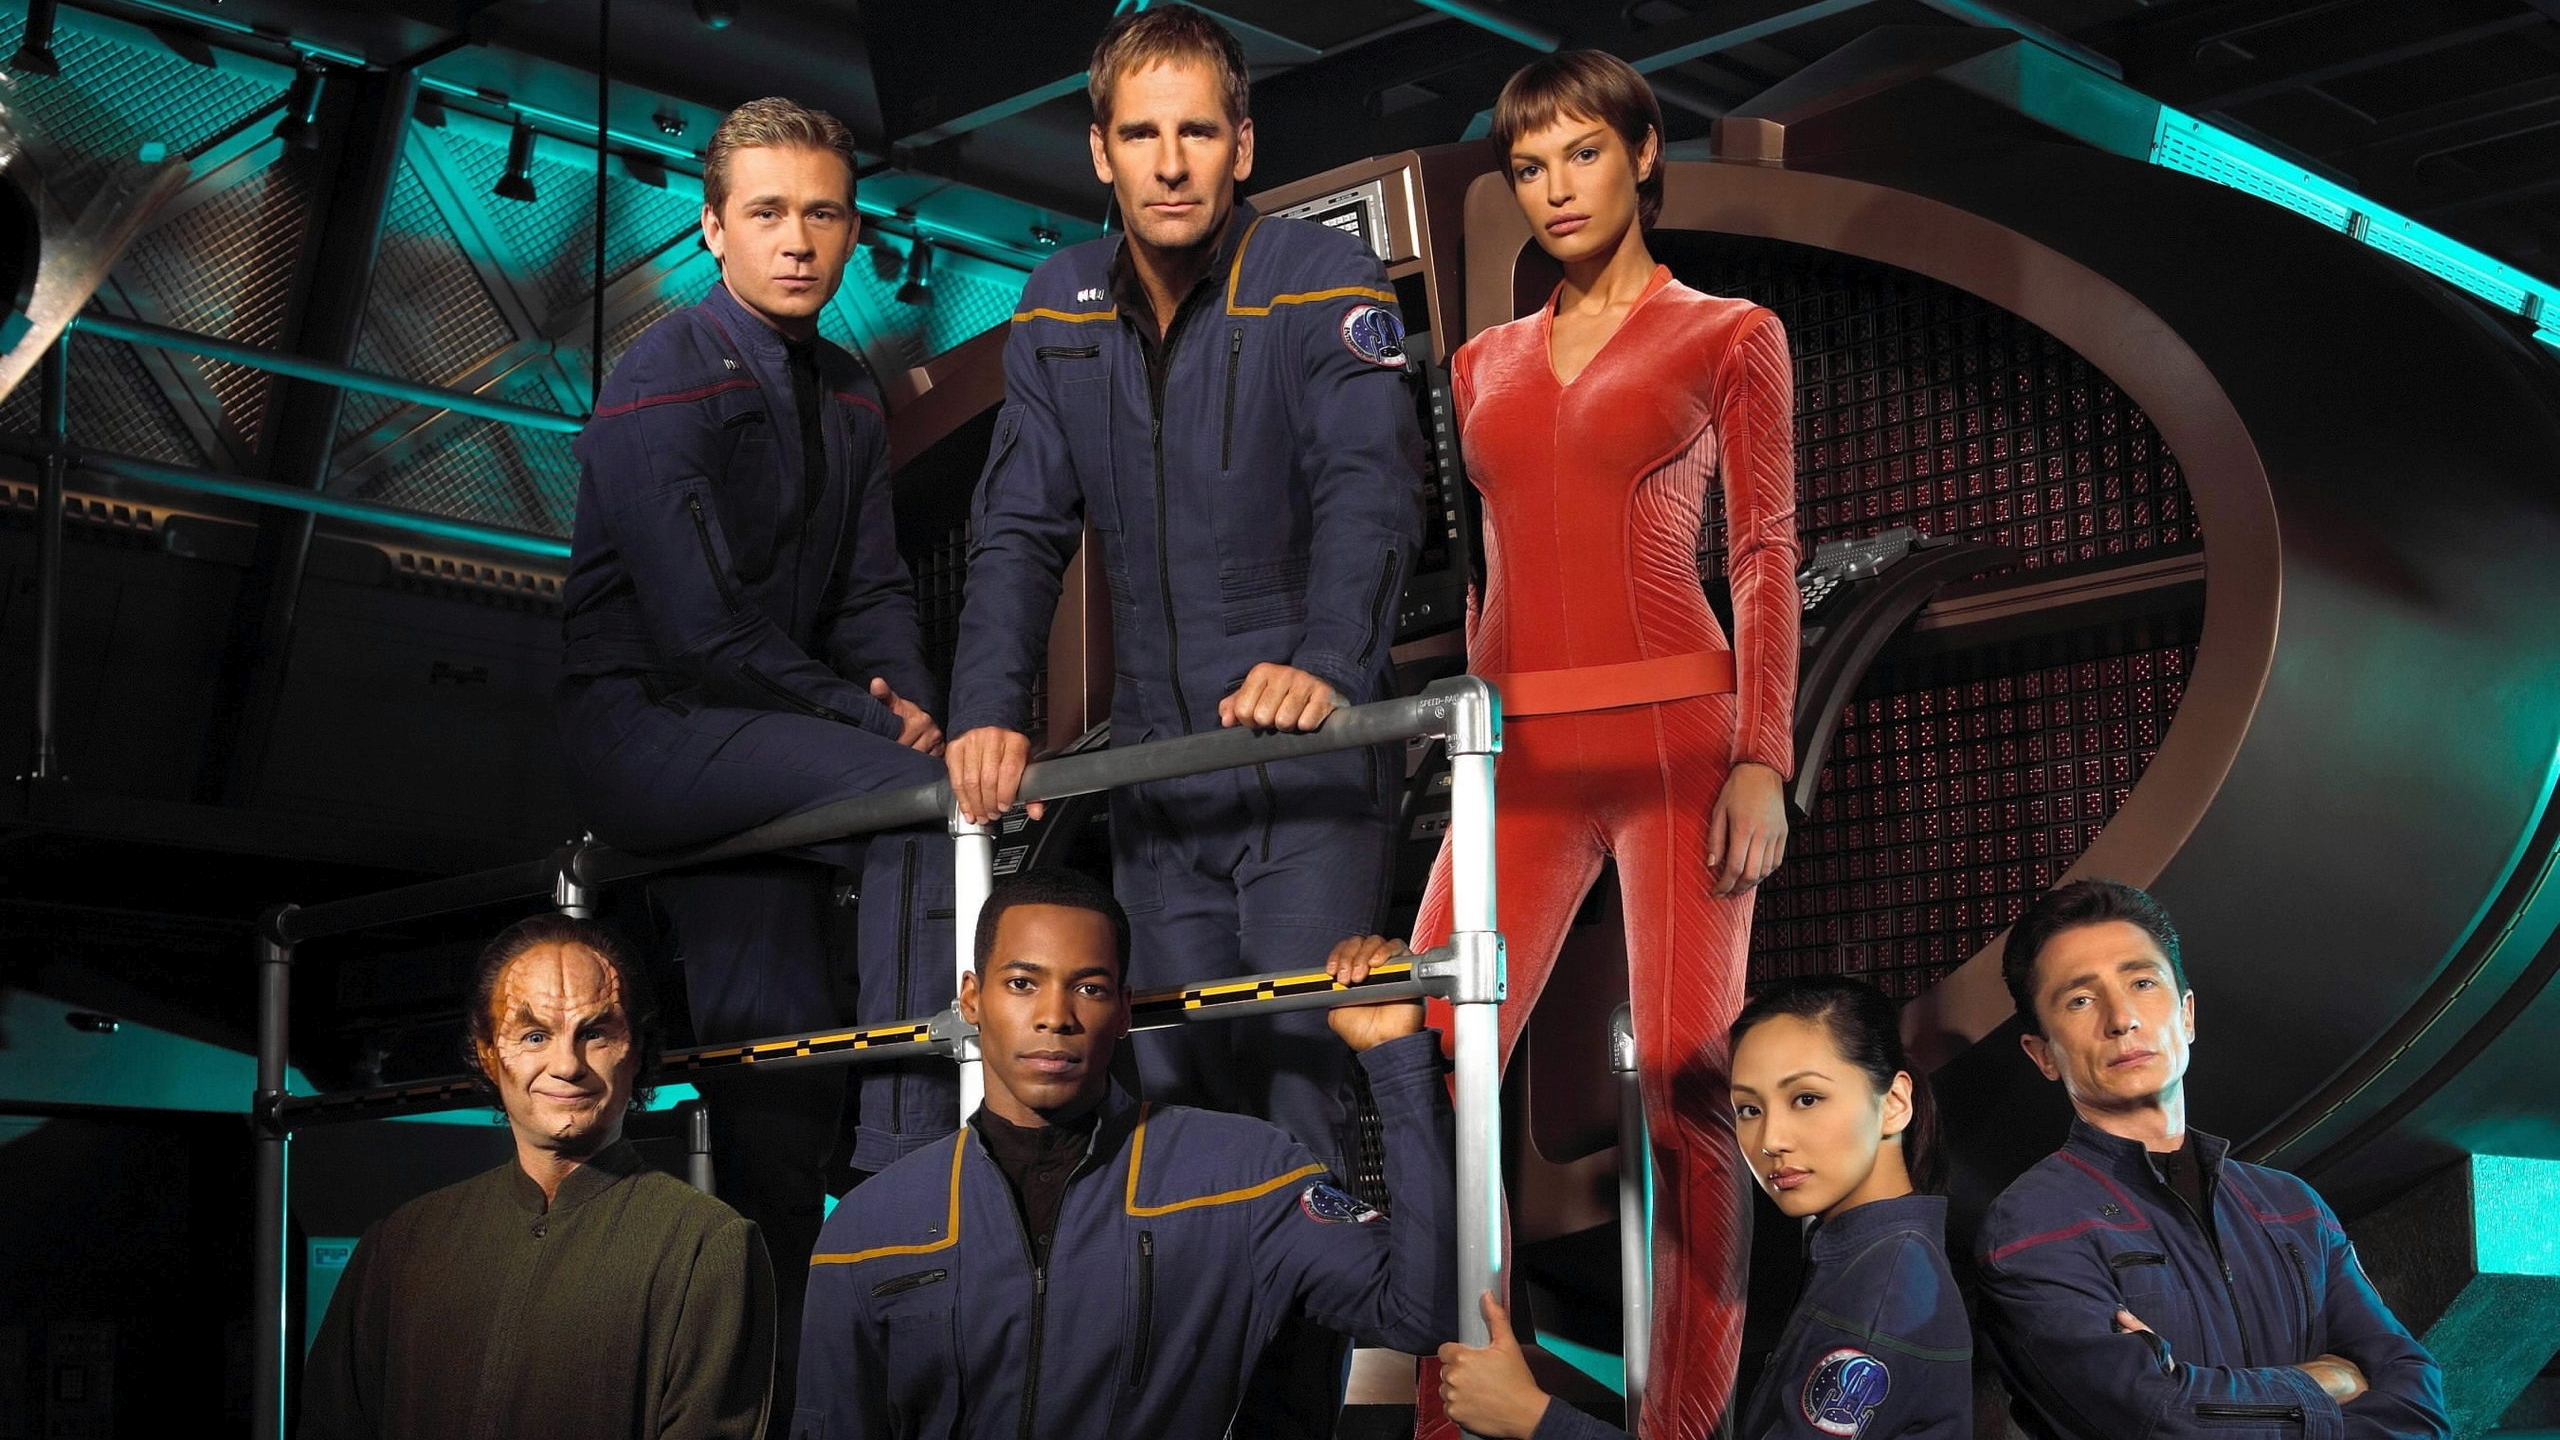 tv show, star trek: enterprise, star trek